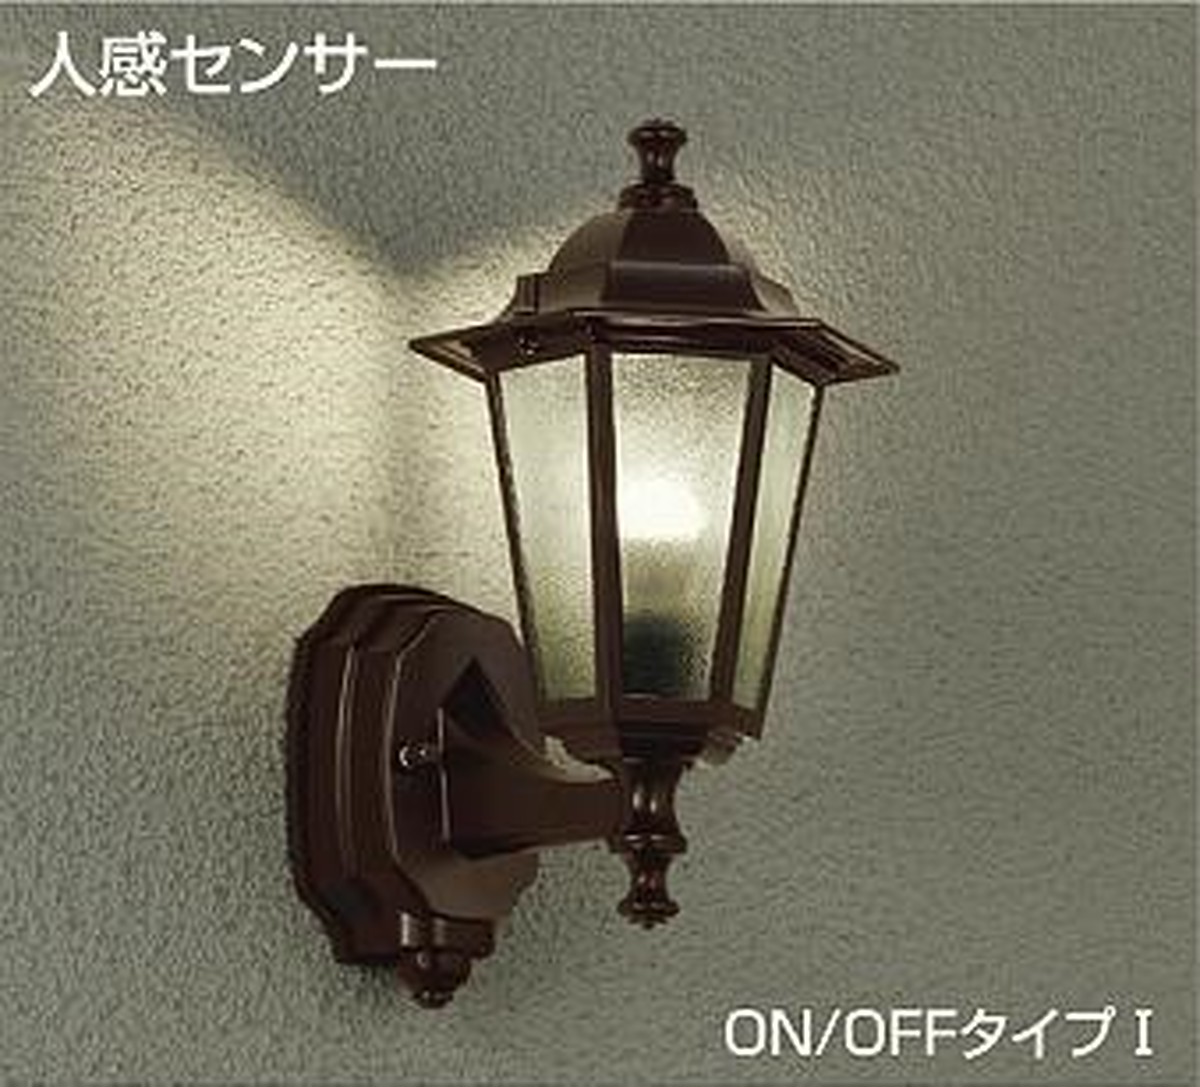 人感センサー付き防雨形玄関灯（ポーチライト）3色【壁付け照明】 勝手口・縁側、通用路周辺の屋外でも活用できます。 | おしゃれ・かわいい